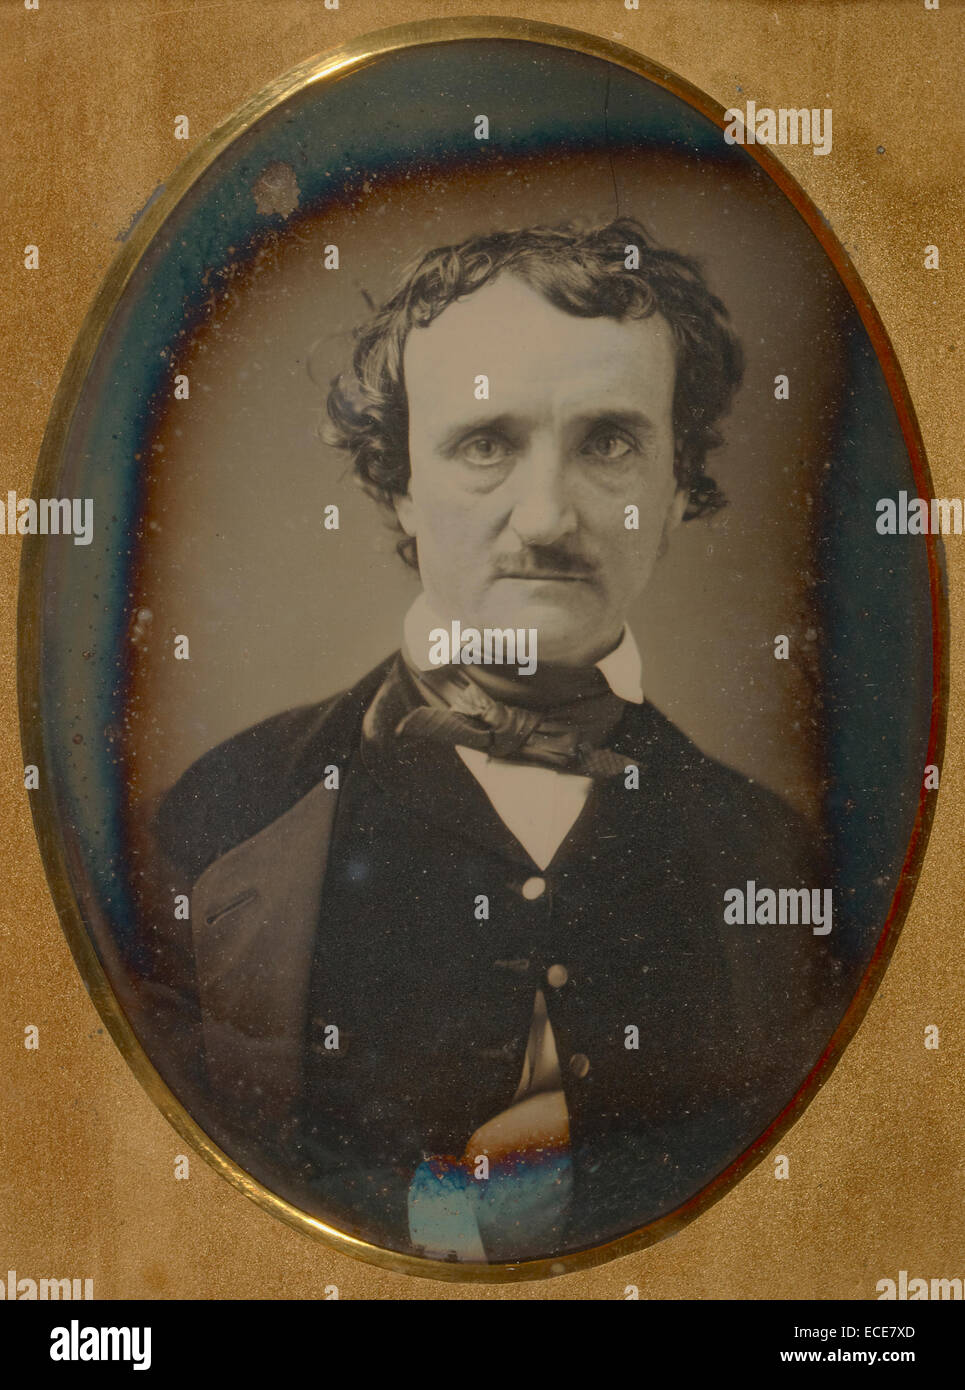 Retrato de Edgar Allan Poe; Desconocido maker Americana; a finales de mayo - principios de junio de 1849; Daguerrotipo; 1/2 placa, Imagen: 12,2 x 8,9 cm (4 13/16 x 3 1/2"). Foto de stock